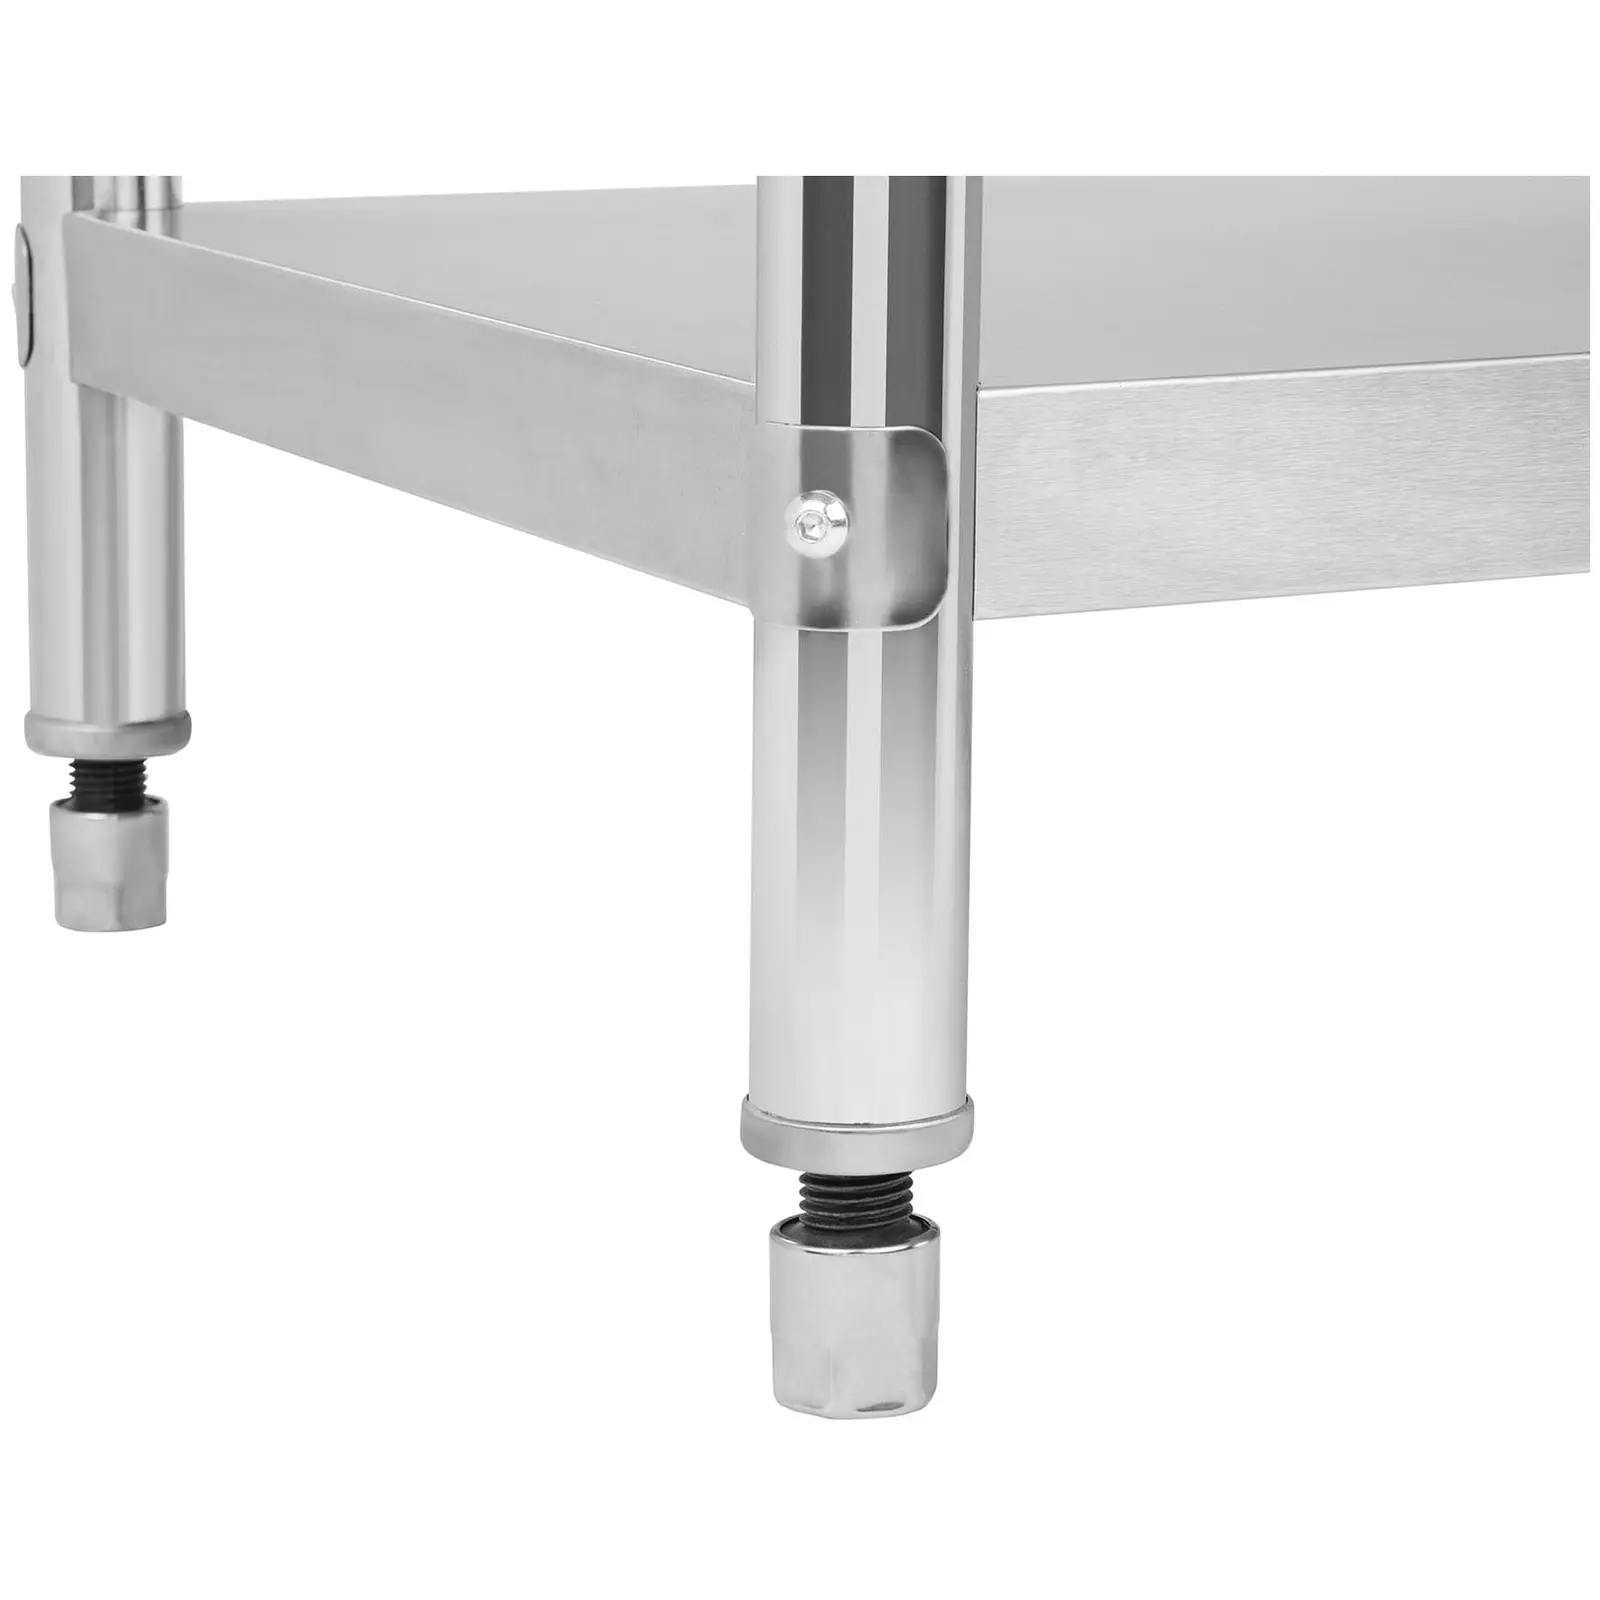 SET tavolo inox con sovrastruttura di appoggio- 120 x 70 cm